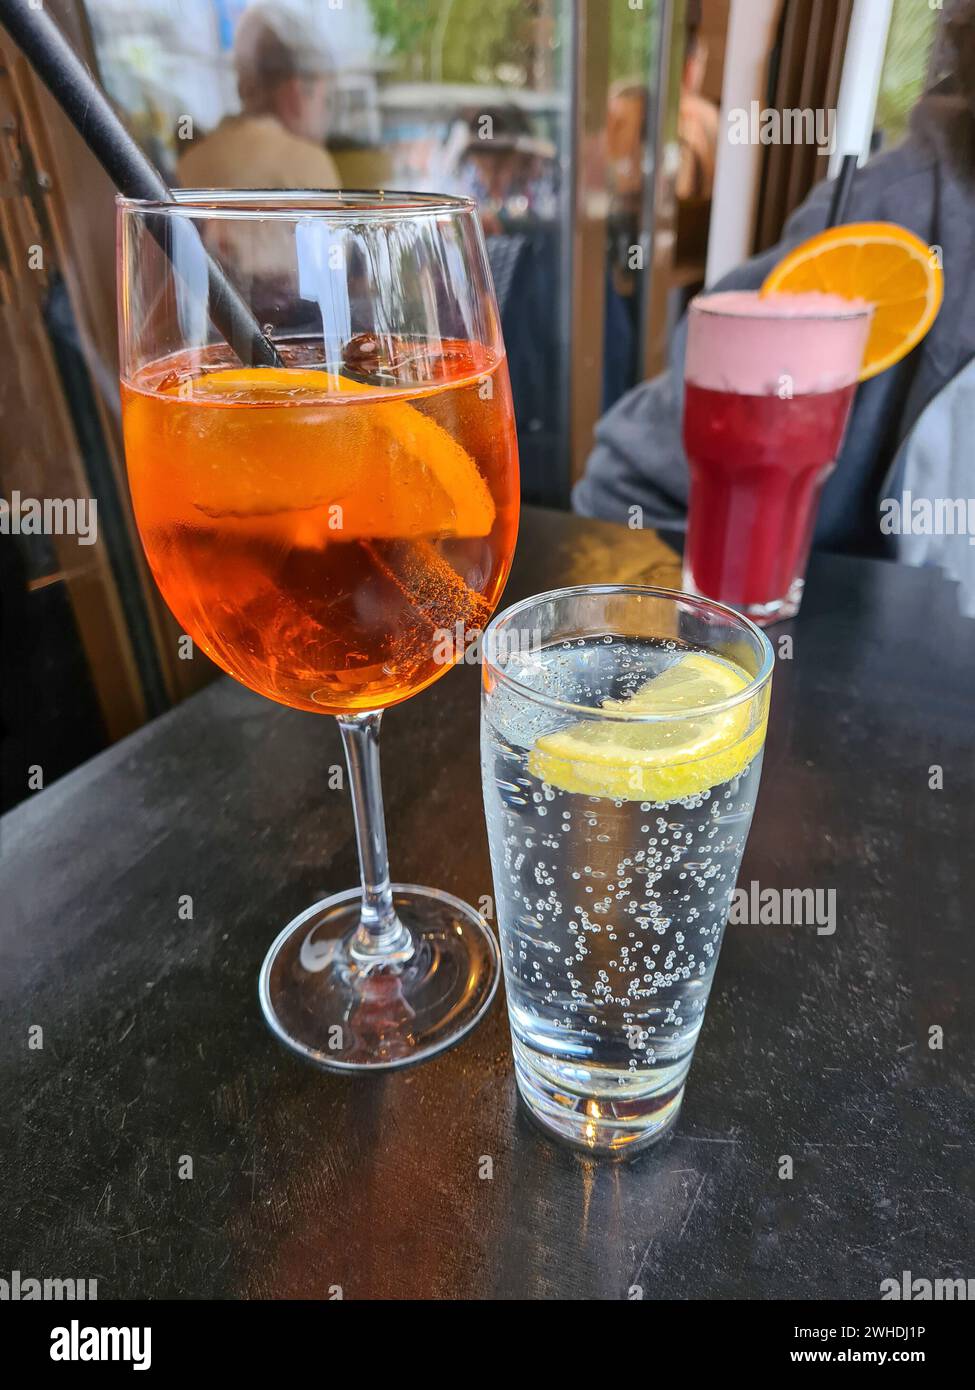 La boisson alcoolisée Aperol Spritz est placée sur une table à côté d'un verre d'eau minérale pétillante et d'un cocktail de fruits rouges sans alcool en arrière-plan Banque D'Images